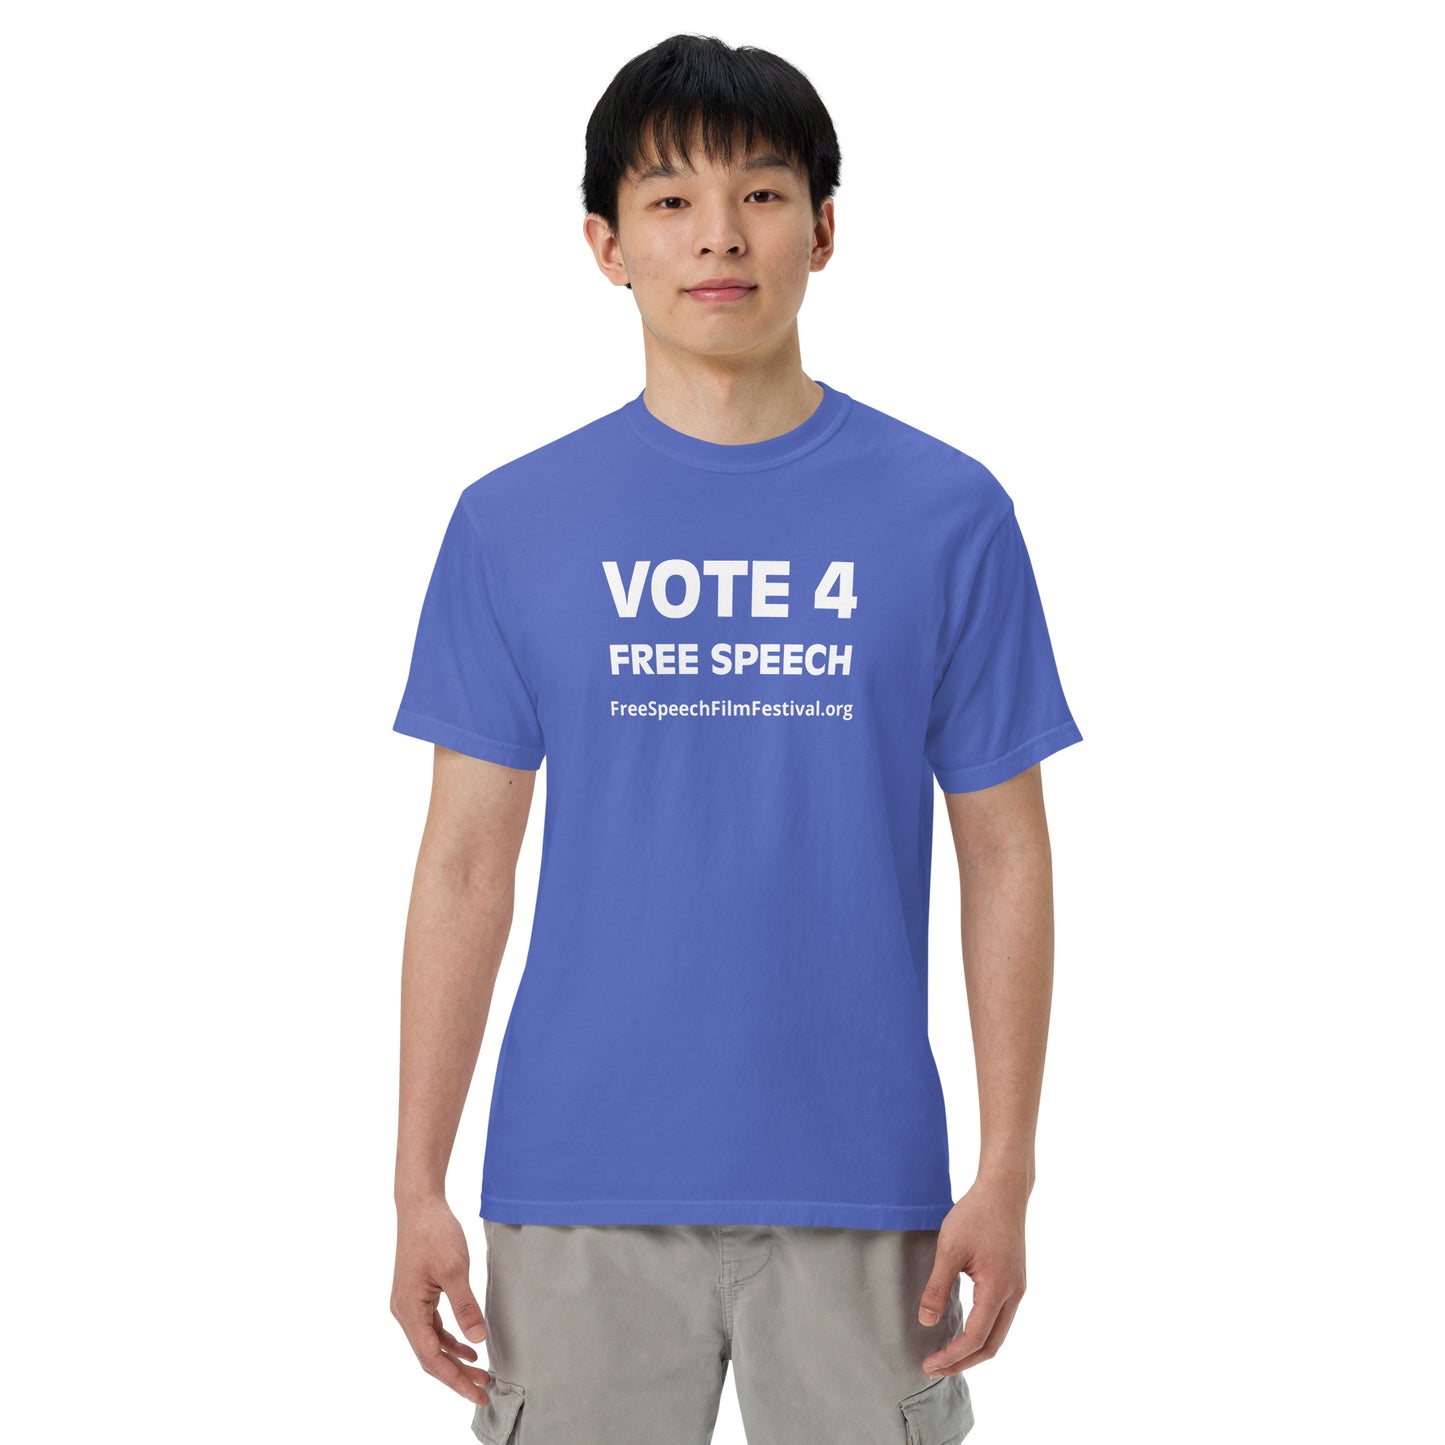 VOTE 4 FREE SPEECH T-SHIRT